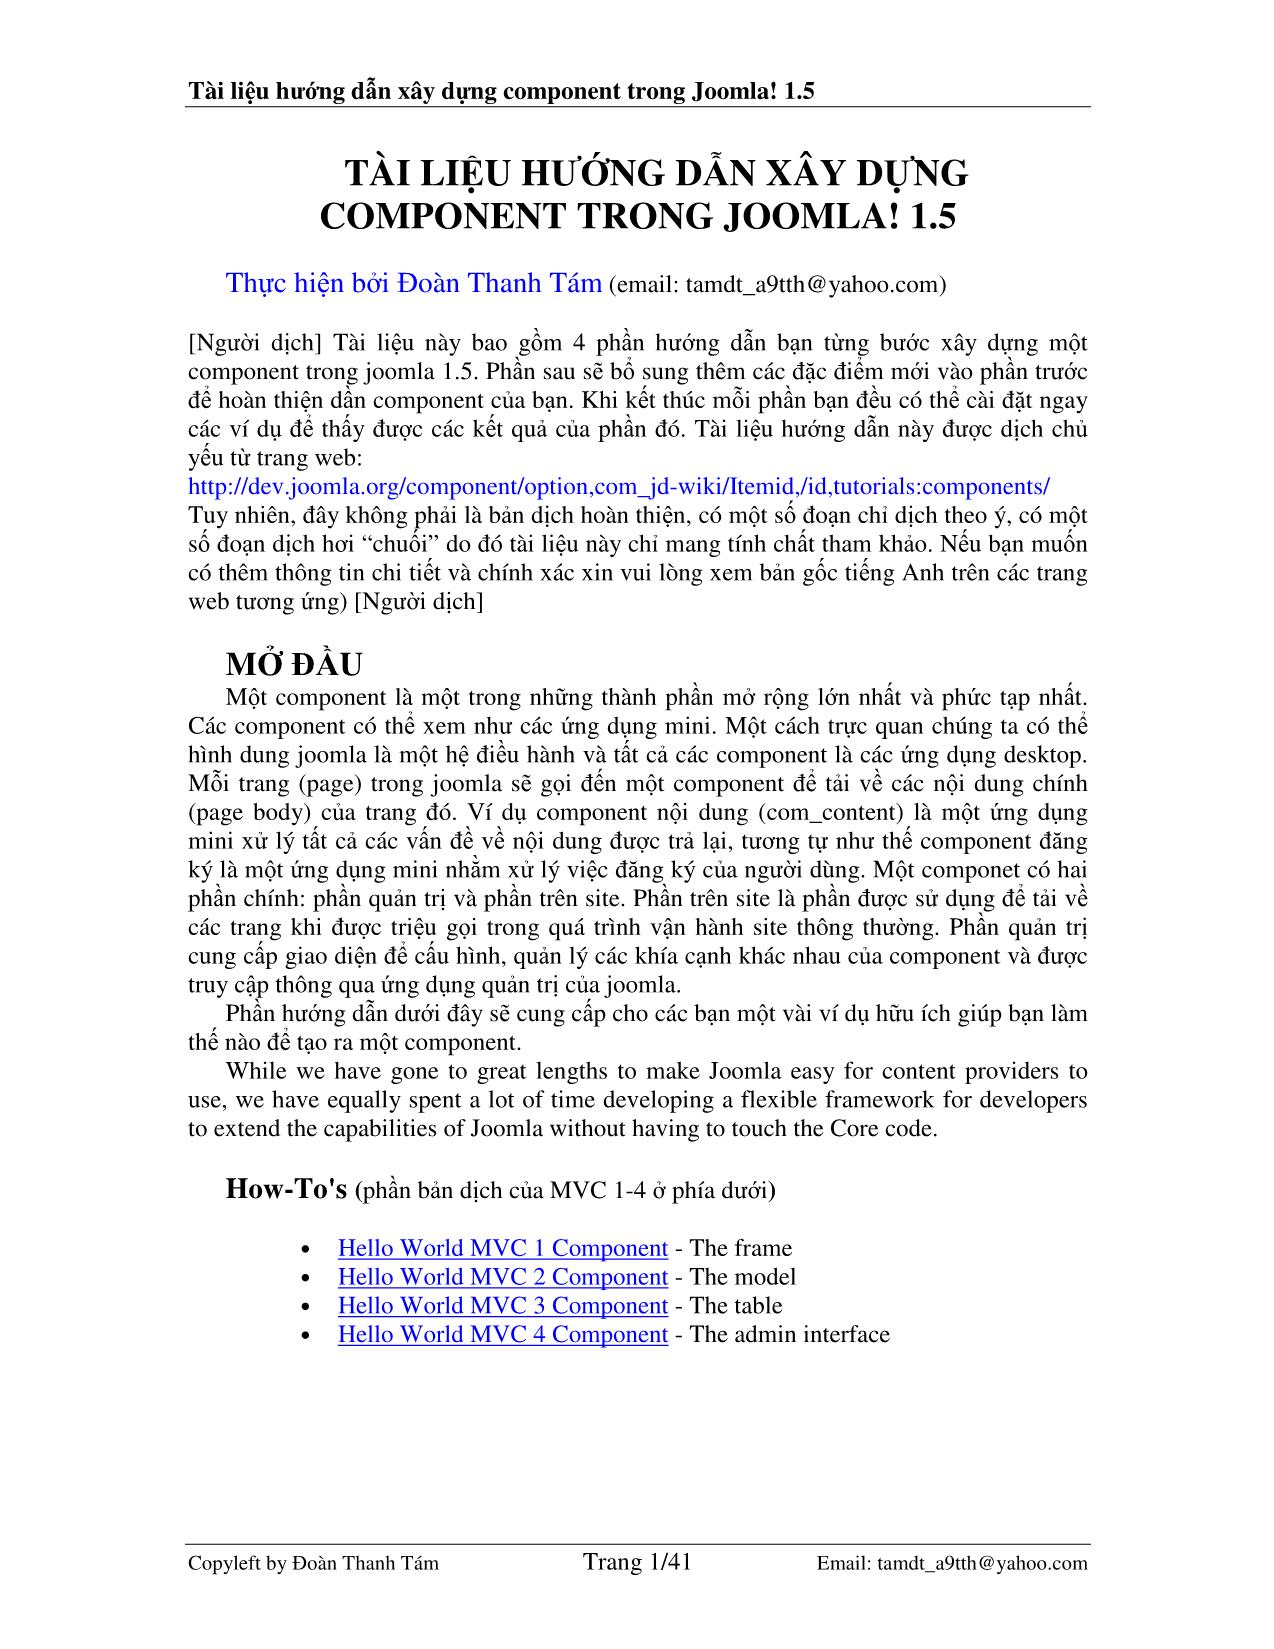 Tài liệu hướng dẫn xây dựng component trong Joomla! 1.5 trang 1